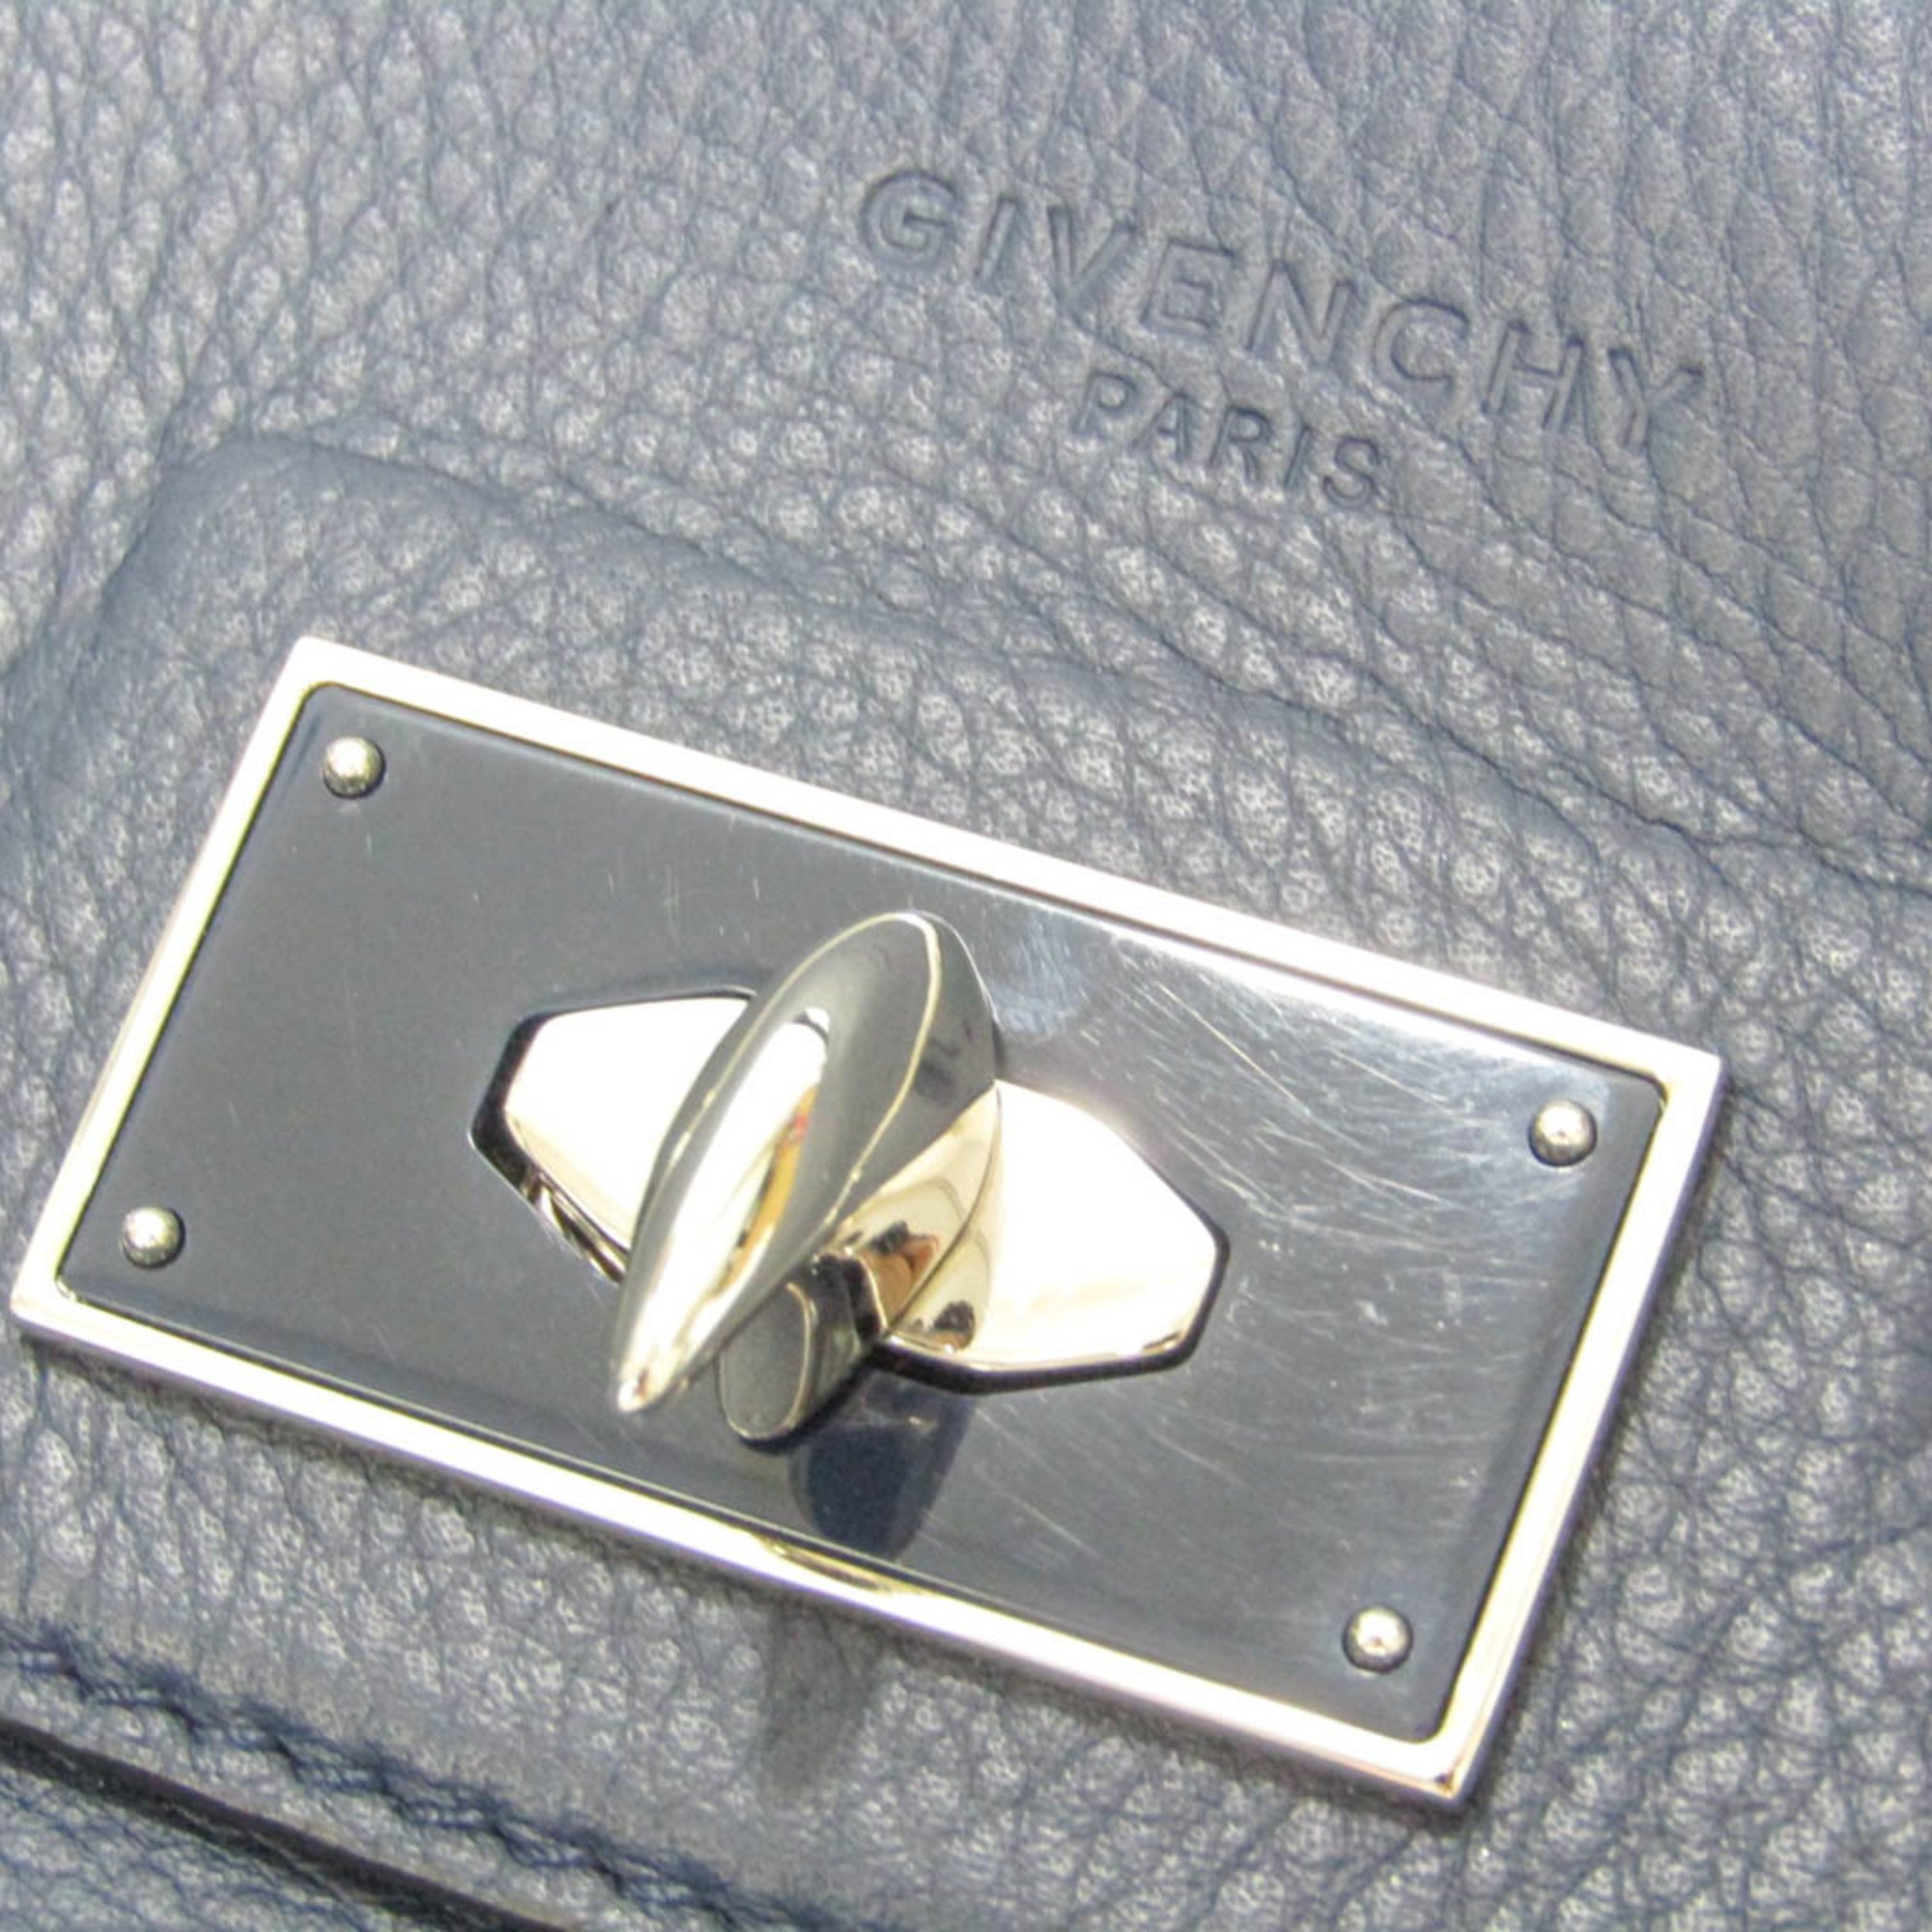 Givenchy Men's Leather Handbag,Shoulder Bag Navy